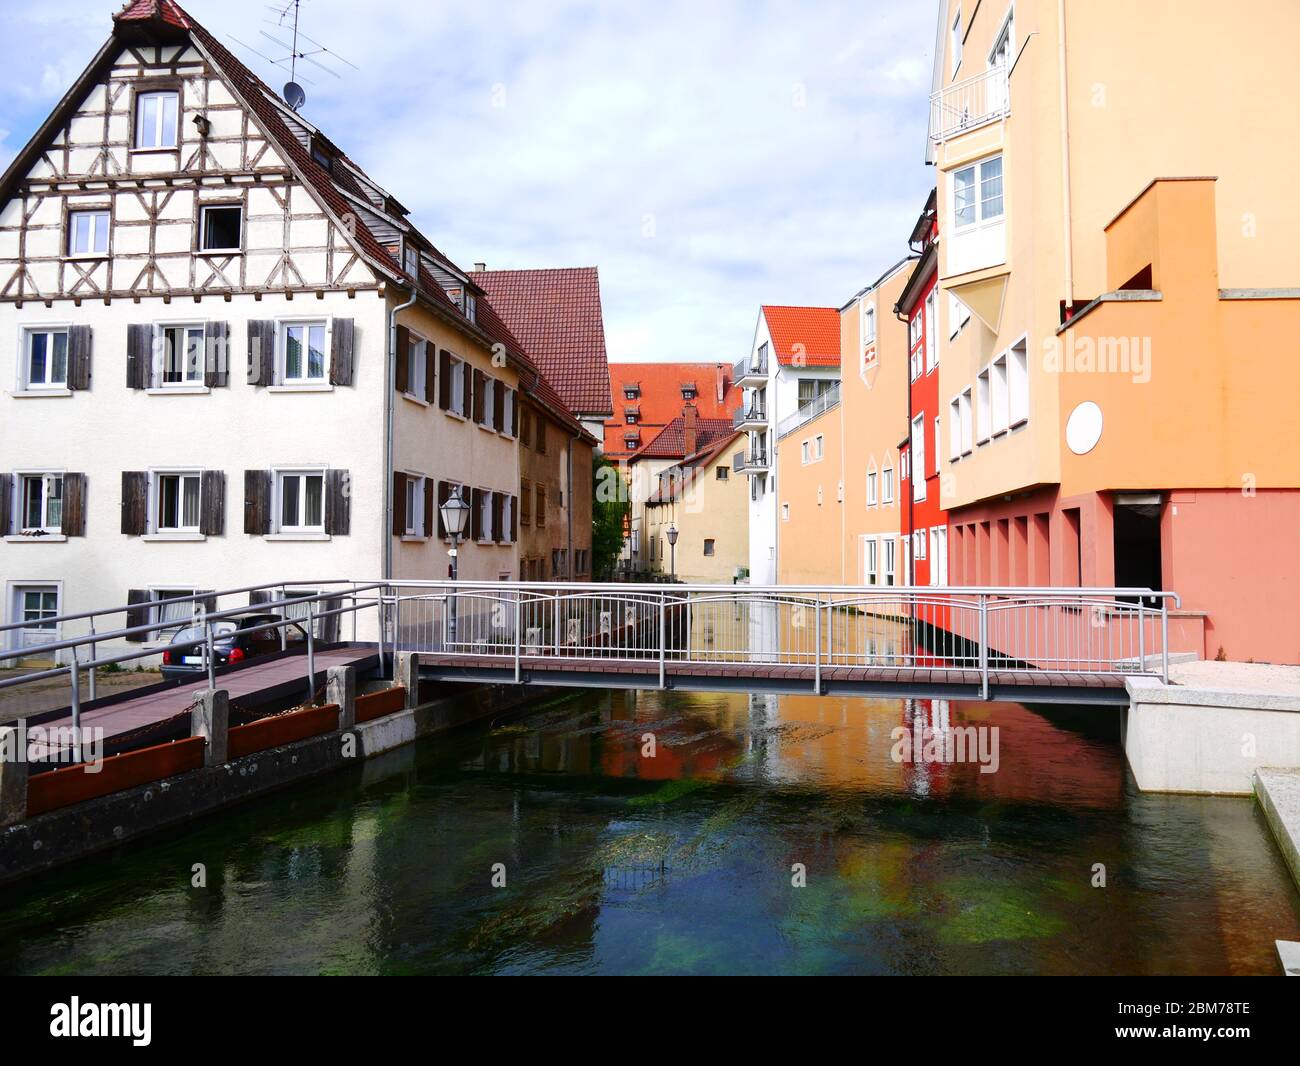 Ehingen, Allemagne: La ville autour de la rivière Schmiech rappelle Venise Banque D'Images